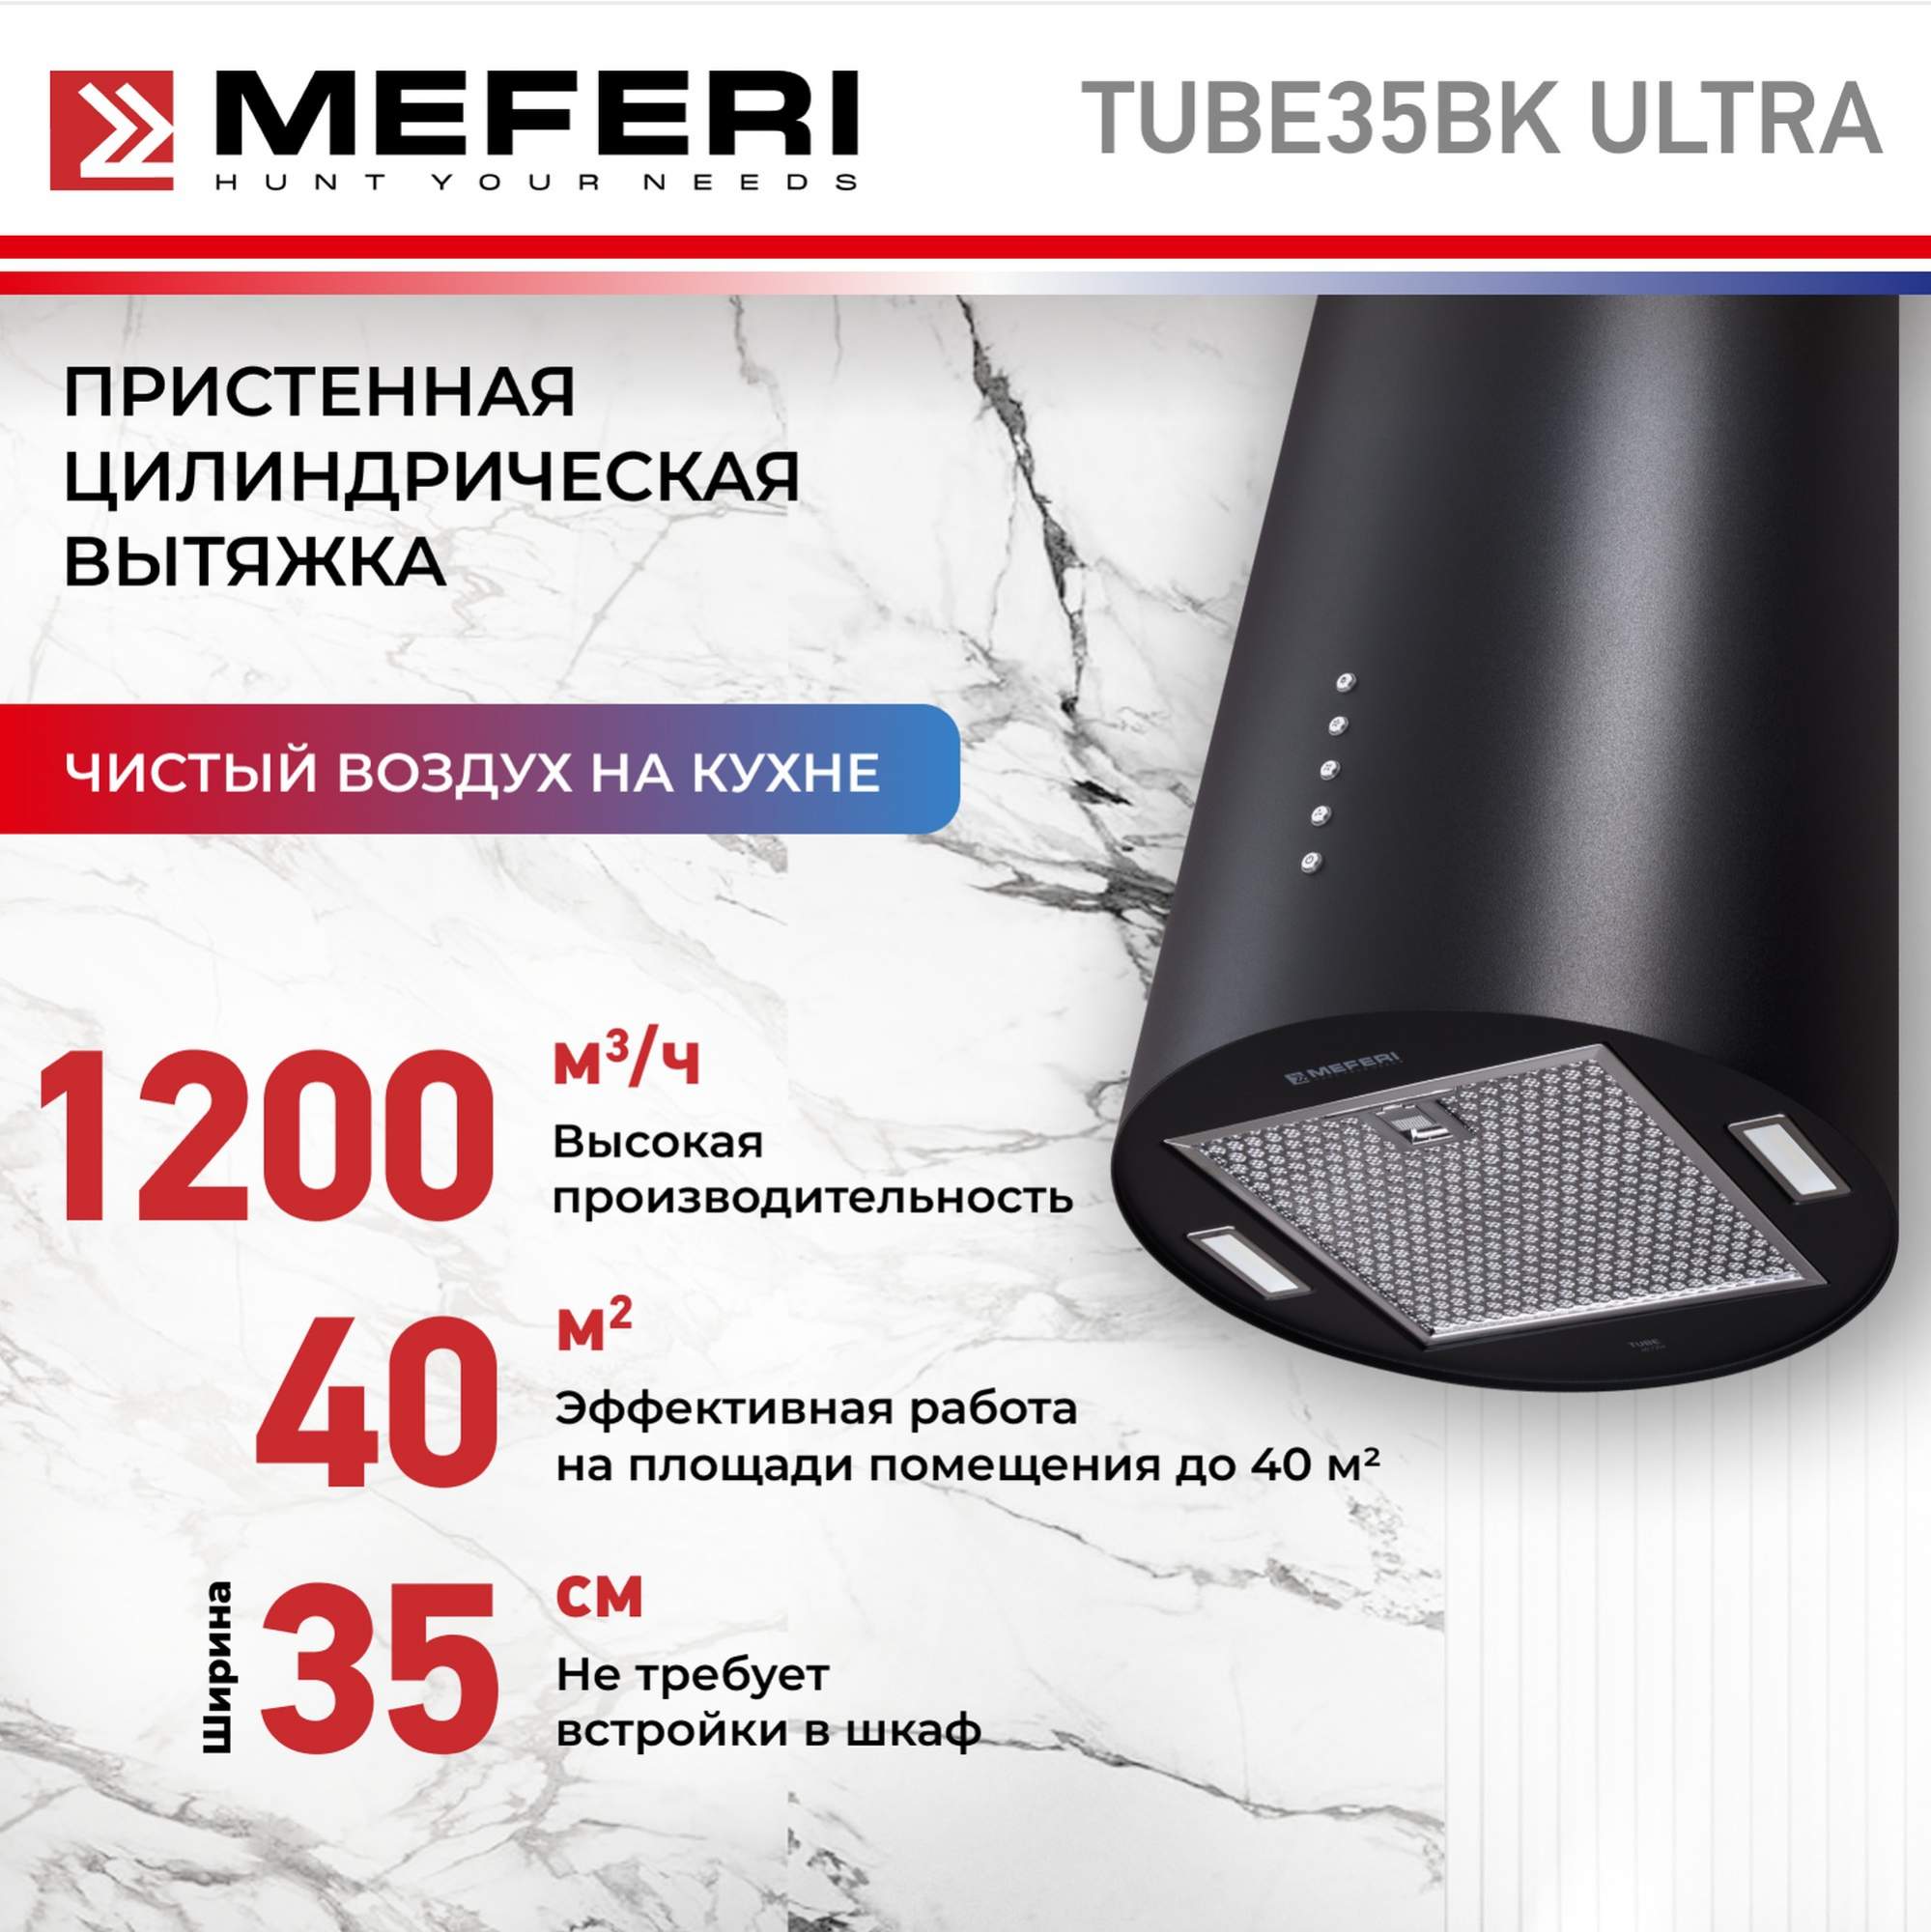 Цилиндрическая вытяжка Meferi TUBE35BK ULTRA архитектурное освещение adj ultra hex bar 12